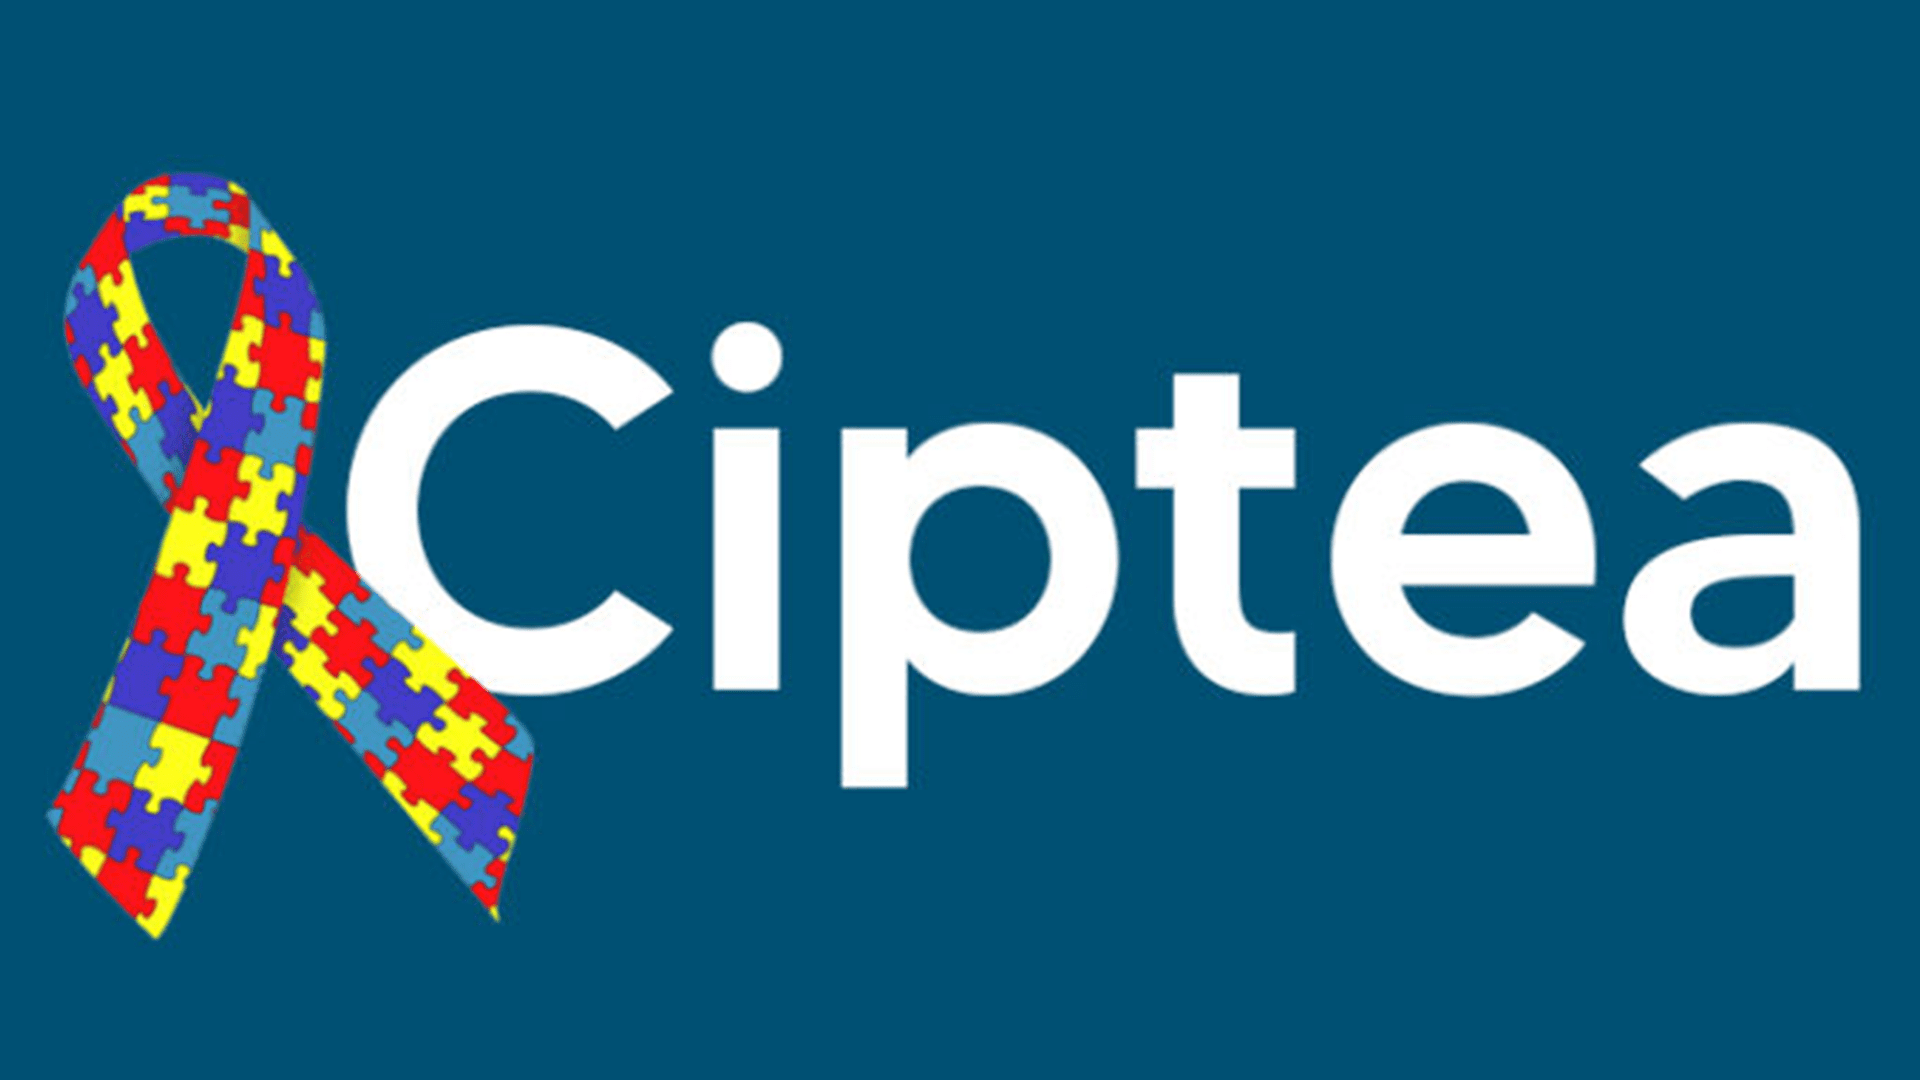 A emissão da CIPTEA é gratuita e garante diversos benefícios, como prioridade em filas de espera e acesso a serviços públicos. (Foto: Reprodução/CIPTEA)